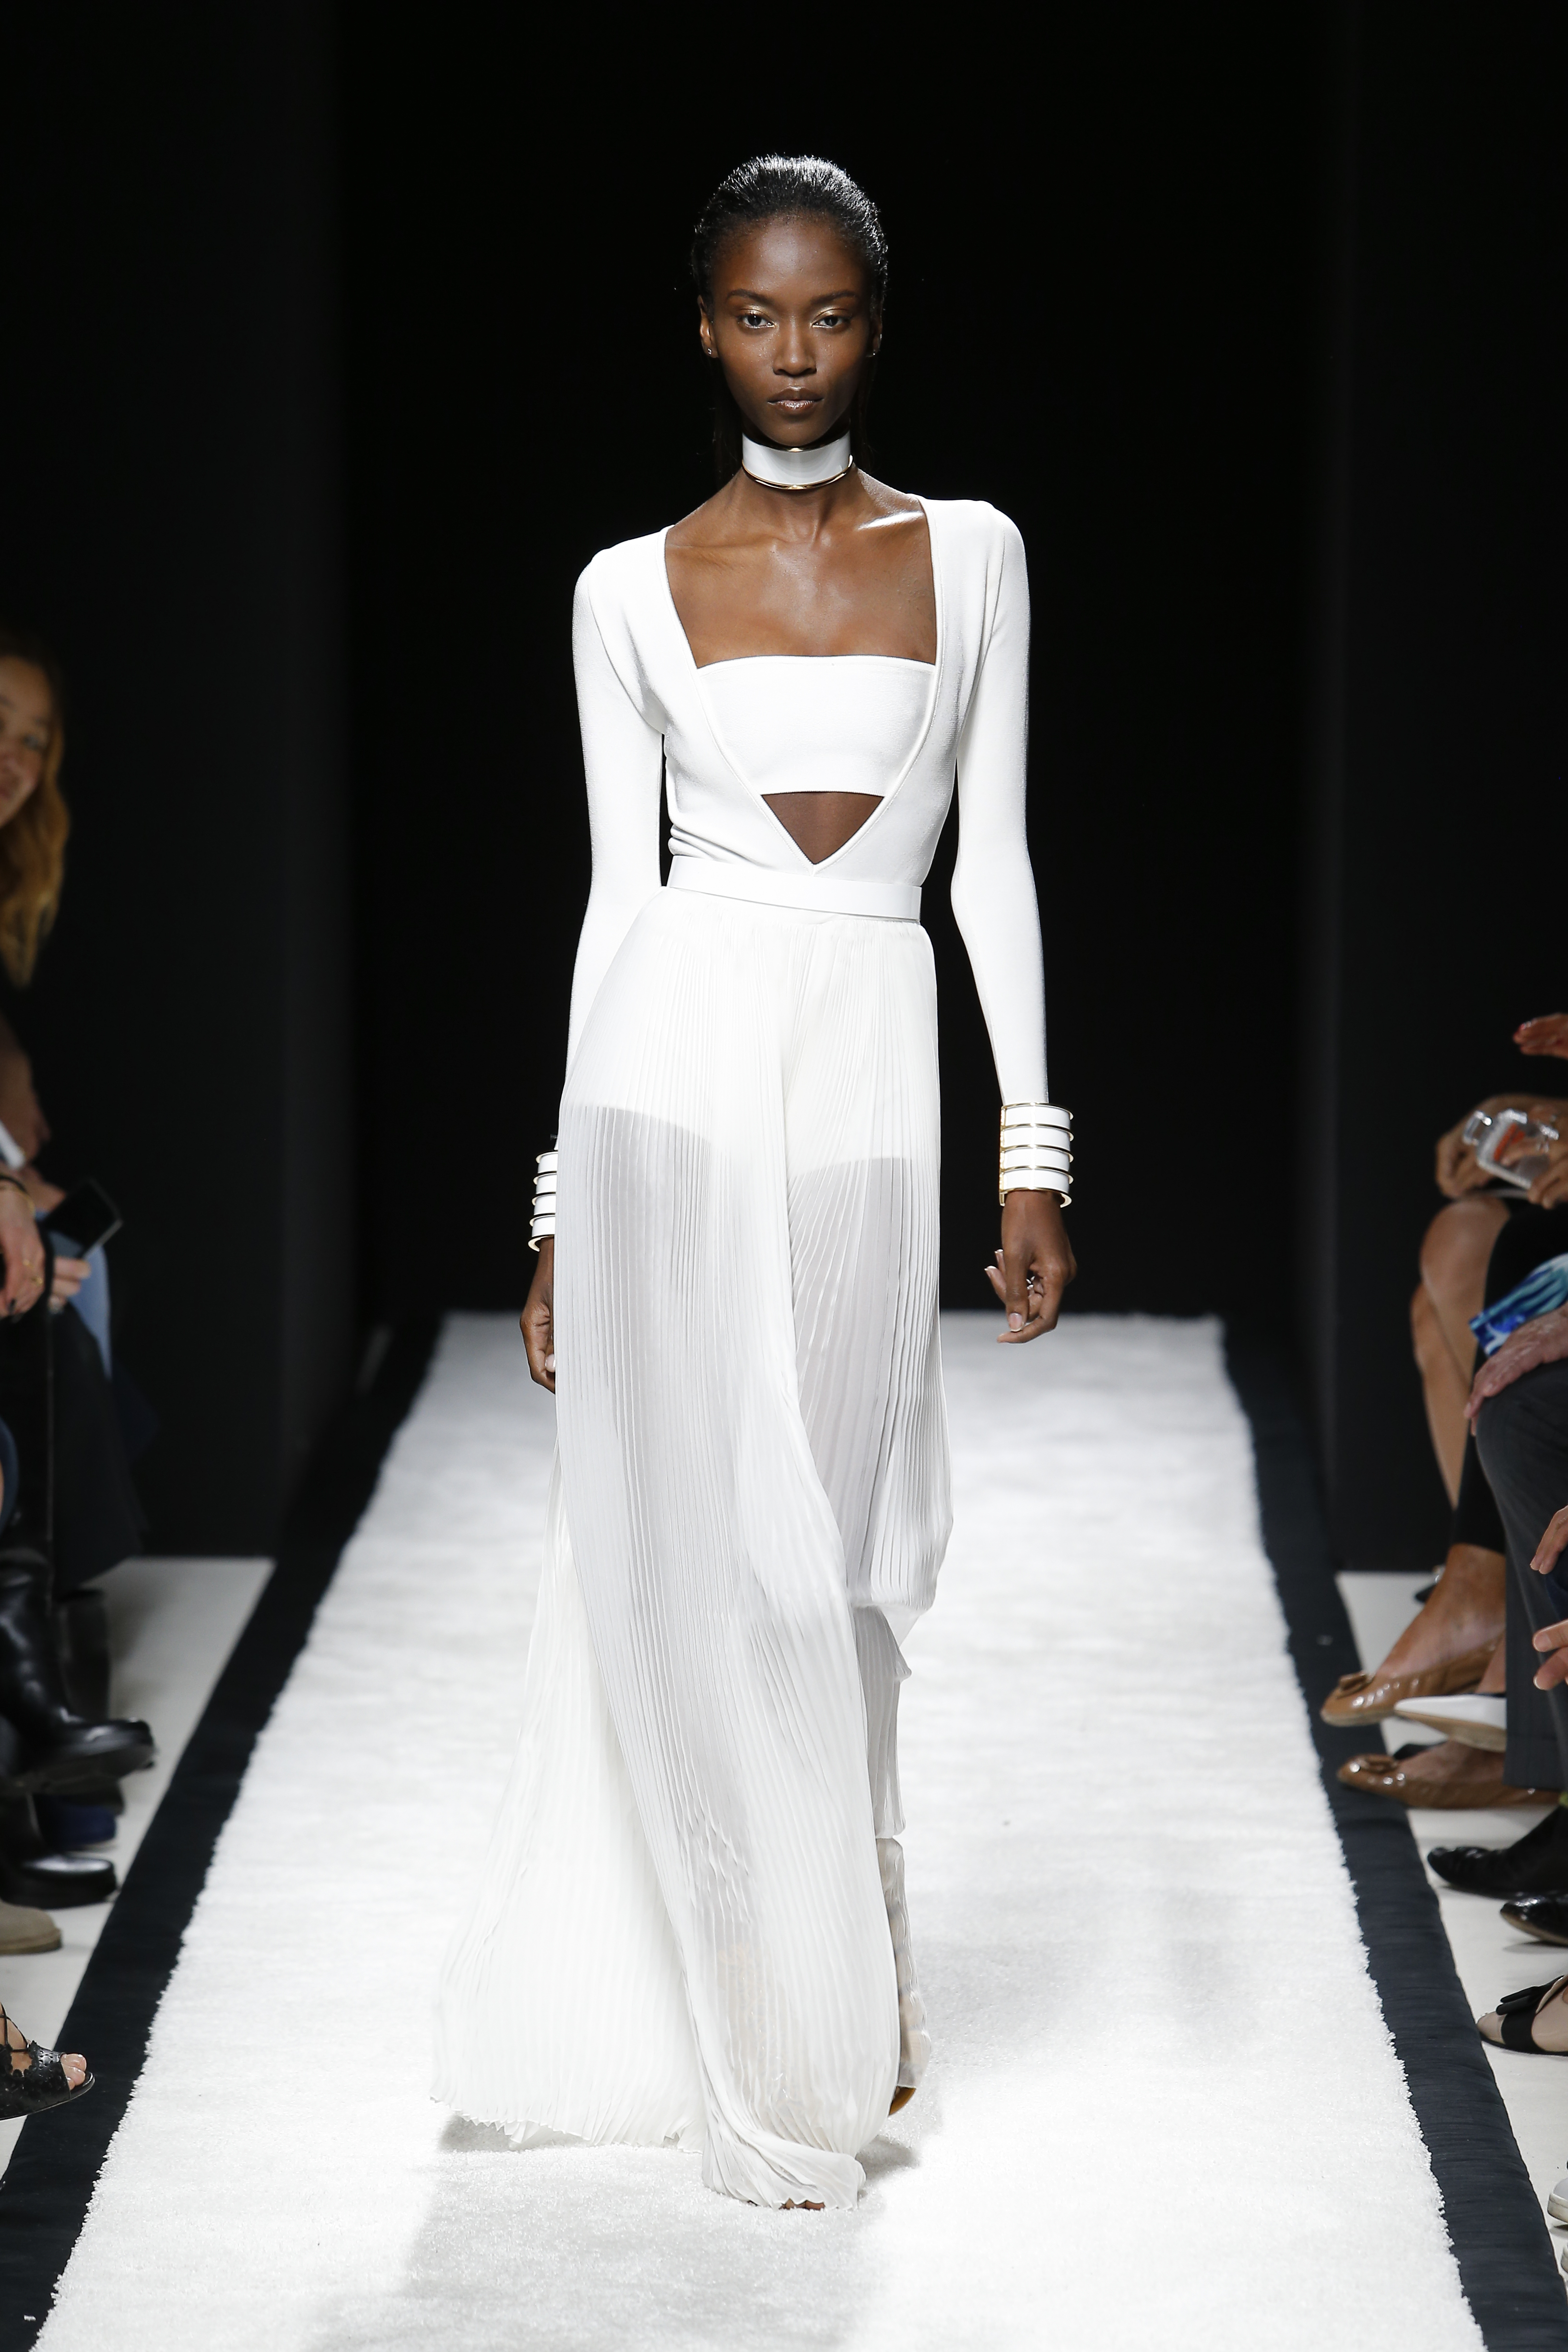 топ-модель Джемма Уорд открывает показ Prada весна-лето 2015